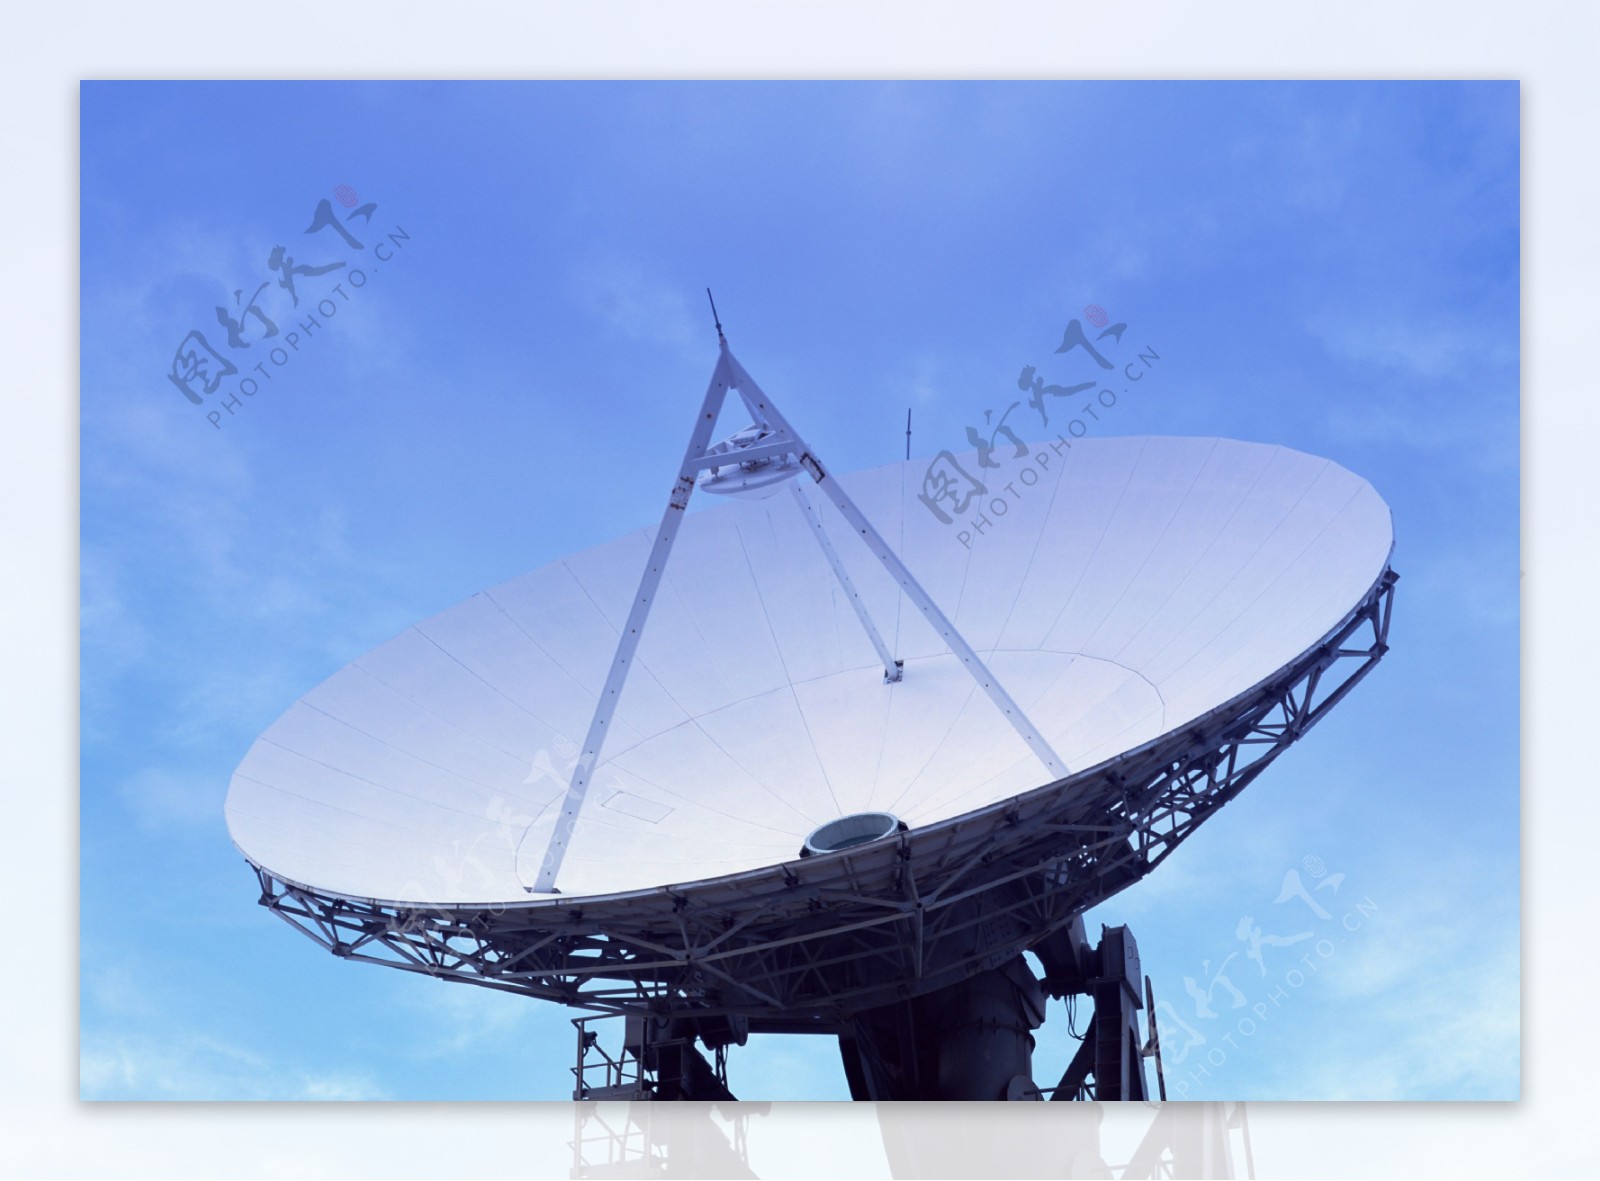 卫星信号接收器